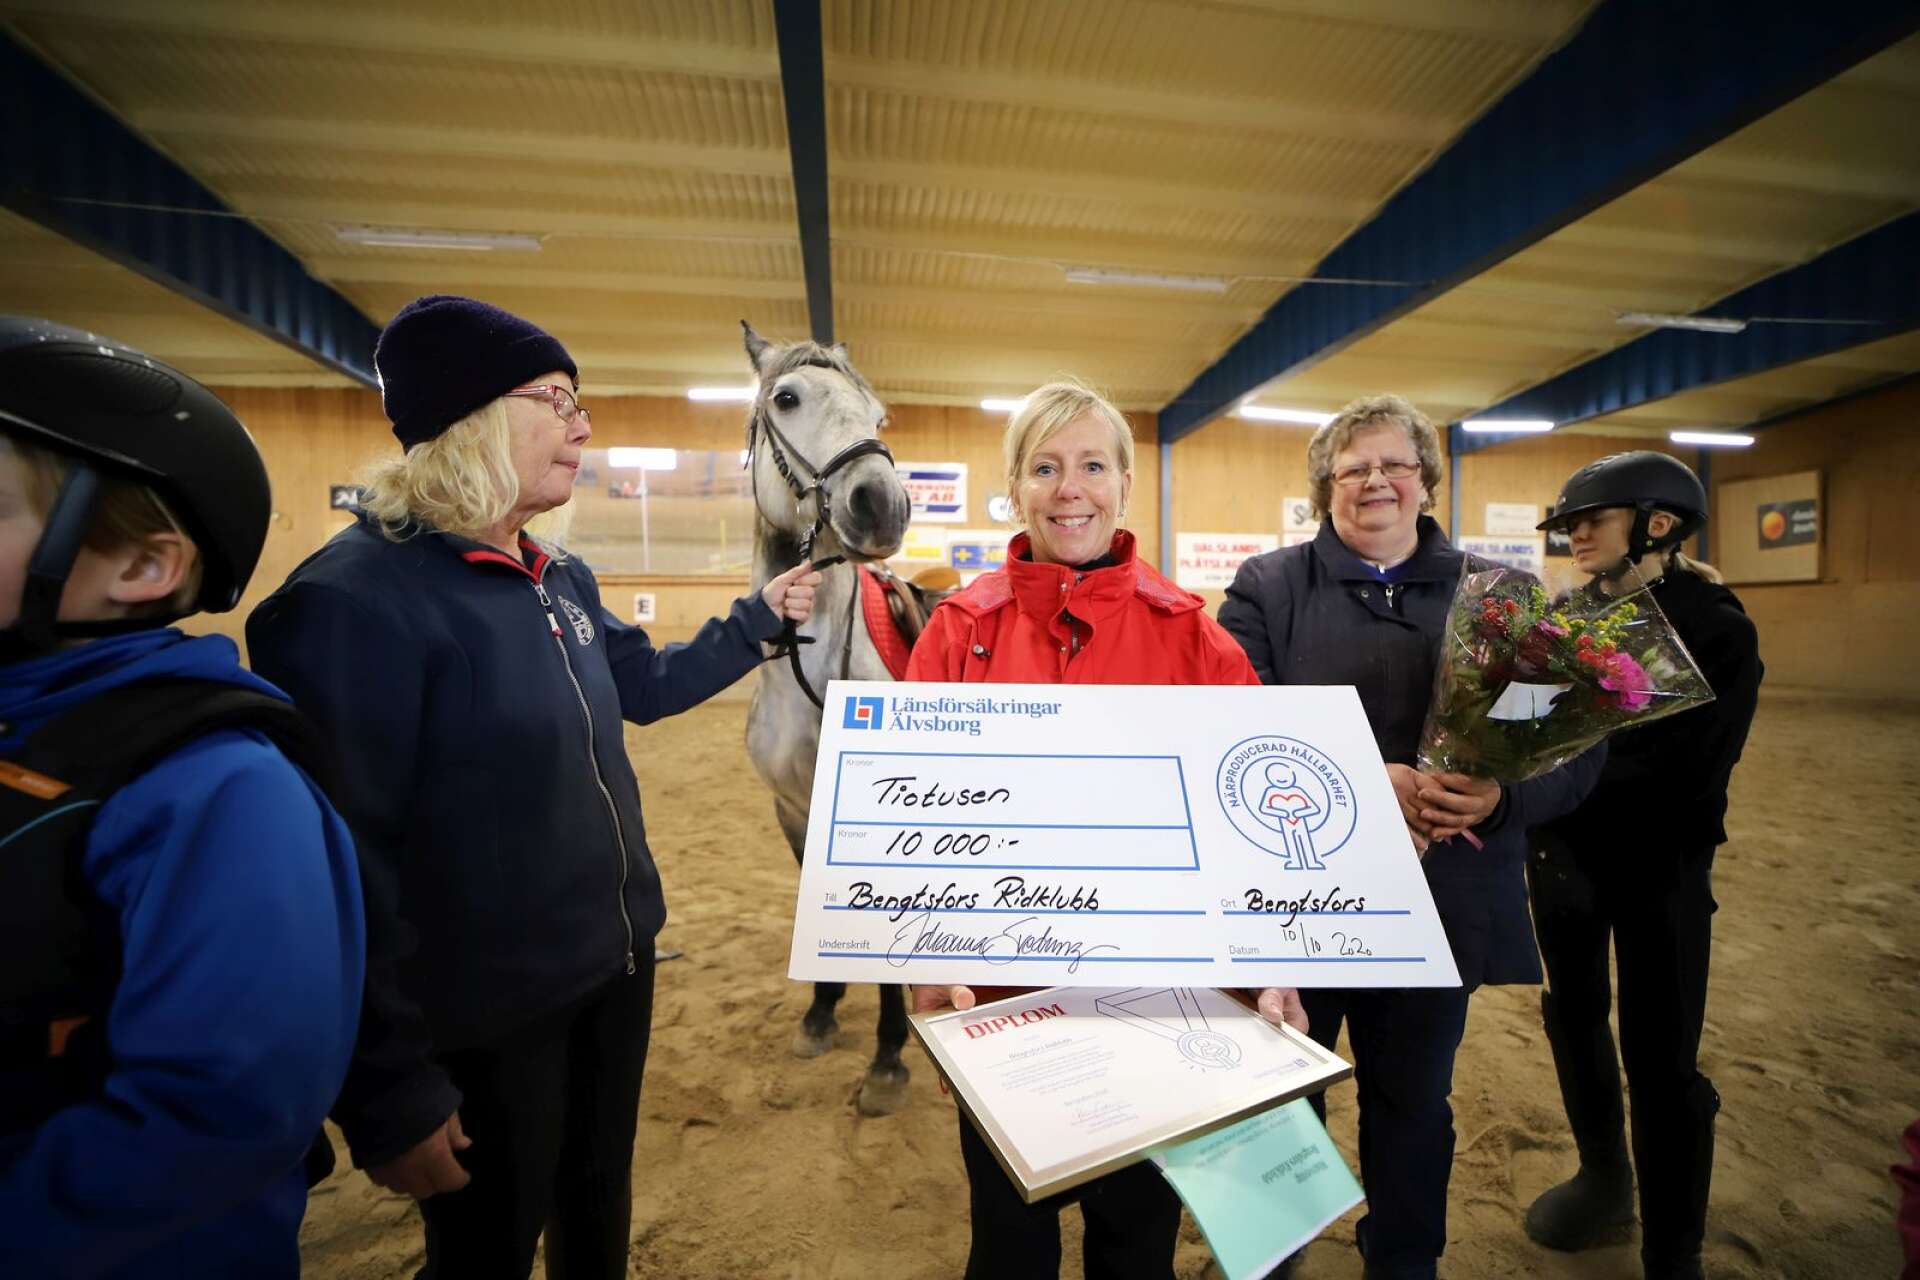 Lena Arwedahl från Länsförsäkringar Älvsborg delade ut priset Lovande förebilder till Bengtsfors ridklubb. Här med Mia Saga, ordförande, Margareta Johansson, stallchef, nyinköpta hästen Silver och en grupp ungdomar.